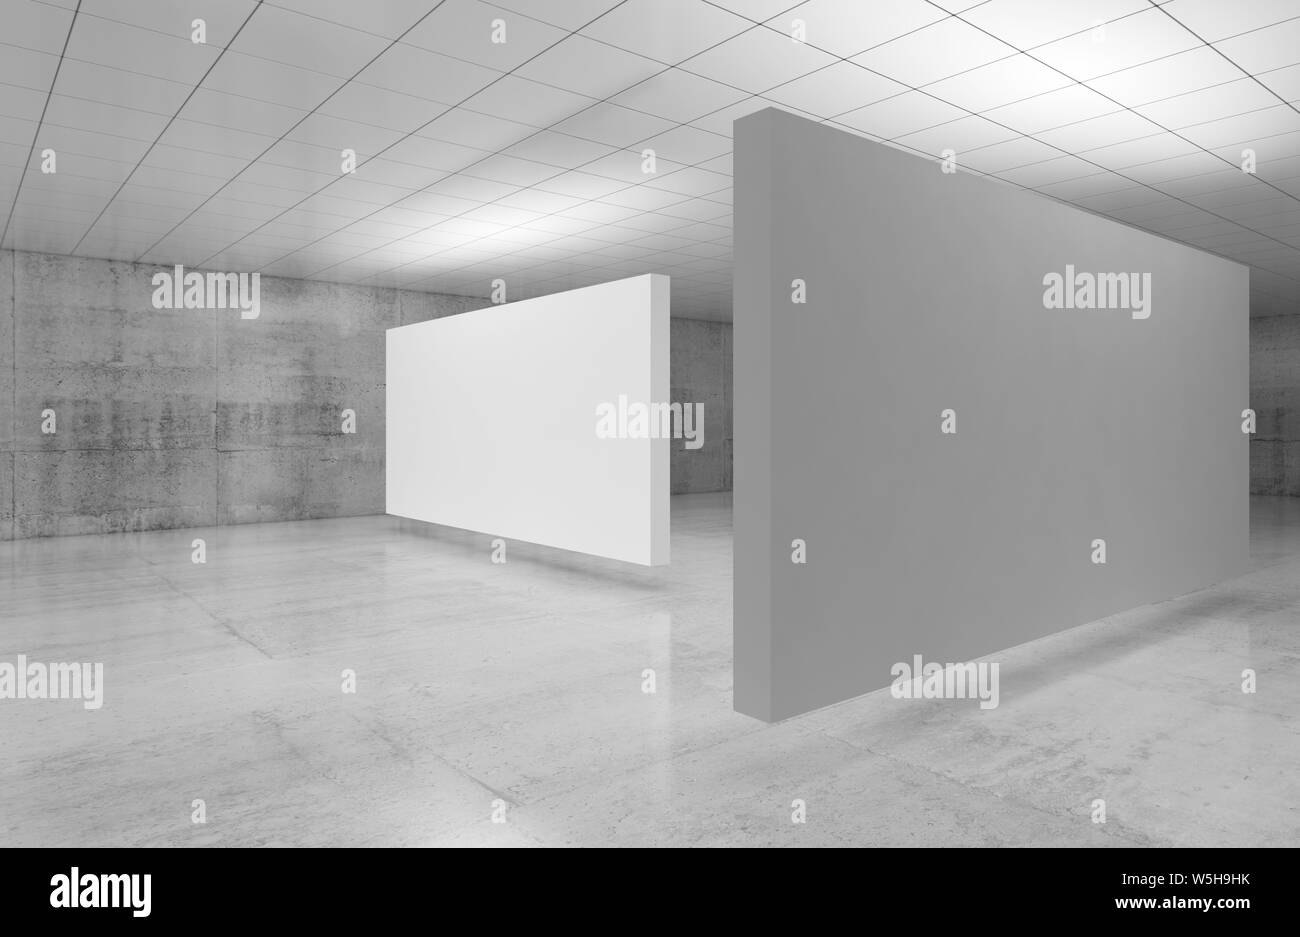 Galerie vide intérieur, de l'abstrait le blanc représente l'installation est dans la salle d'exposition avec des parois en béton poli et brillant au plafond. Illustrati 3d Banque D'Images